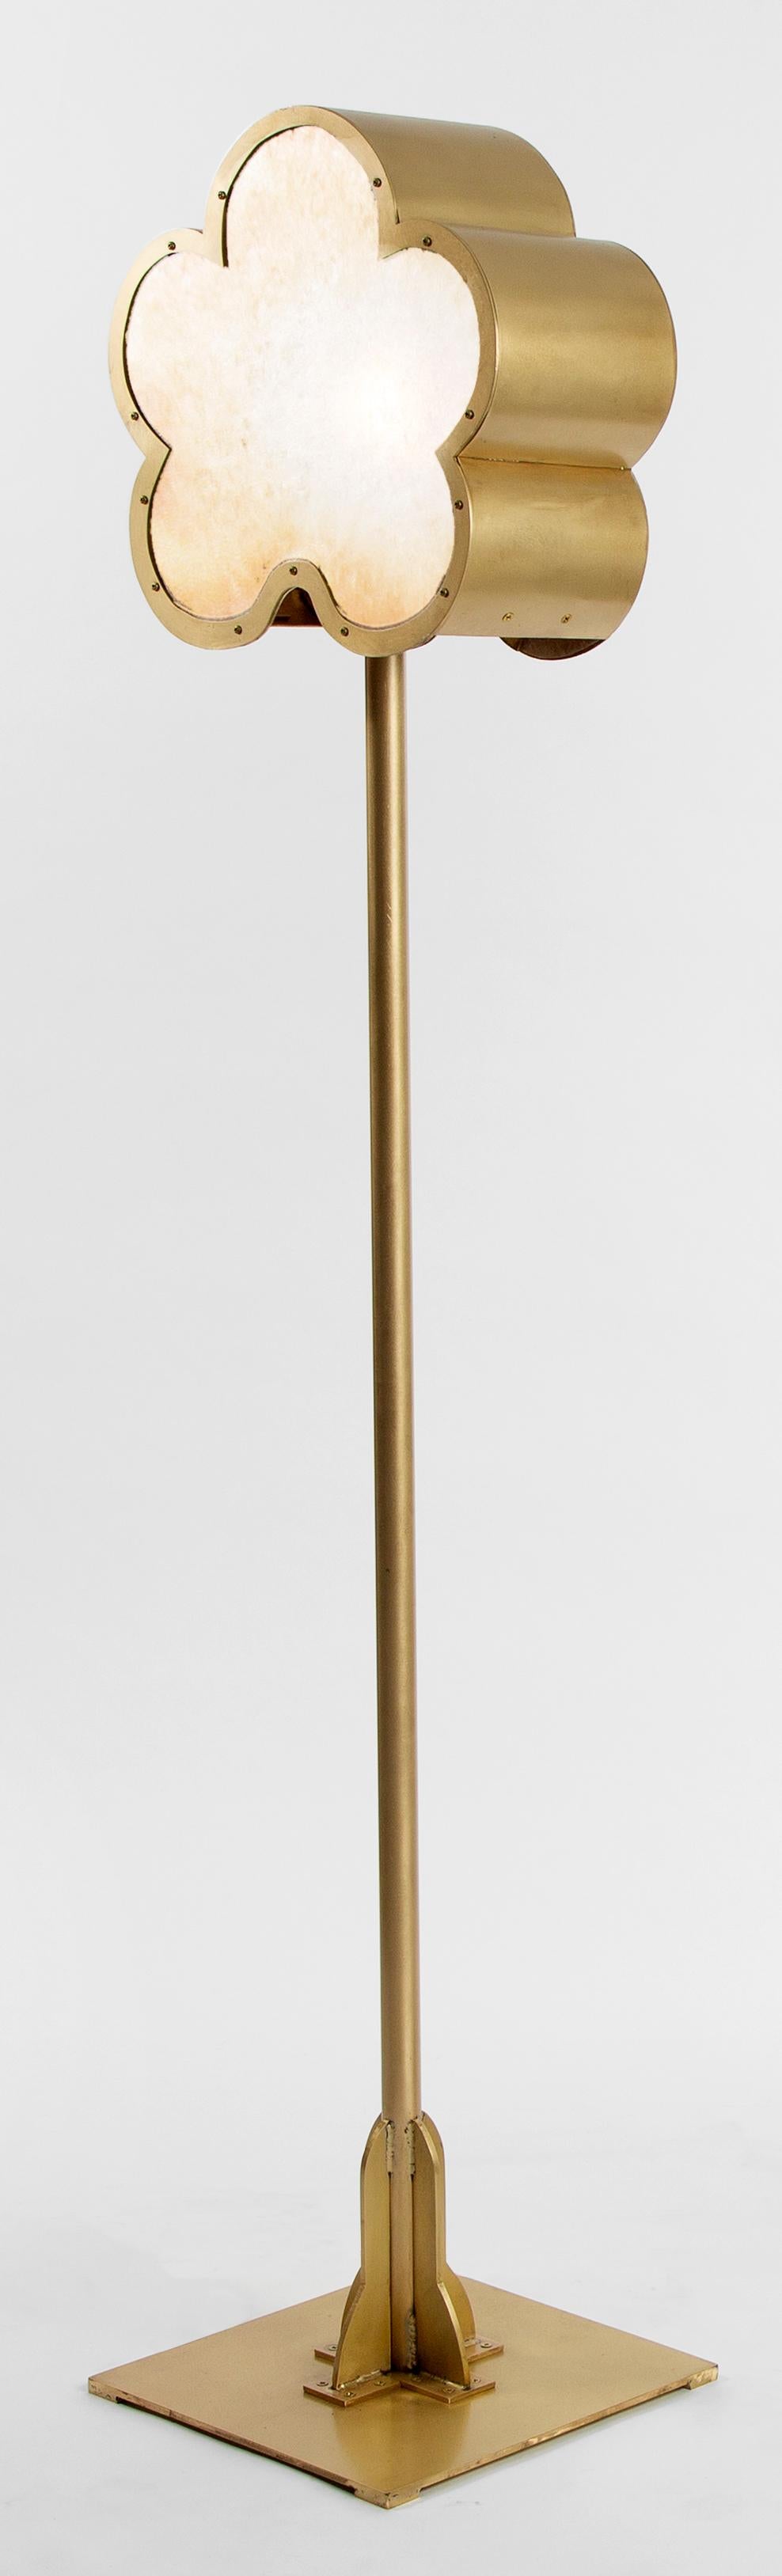 Inspiré de la série Flowers d'Andy Warhol, ce lampadaire sur pied est entièrement fabriqué en acier inoxydable.   Fabriqué à la main en bronze avec une base carrée et un diffuseur en mica.  Modèle en aluminium également disponible. Nécessite une